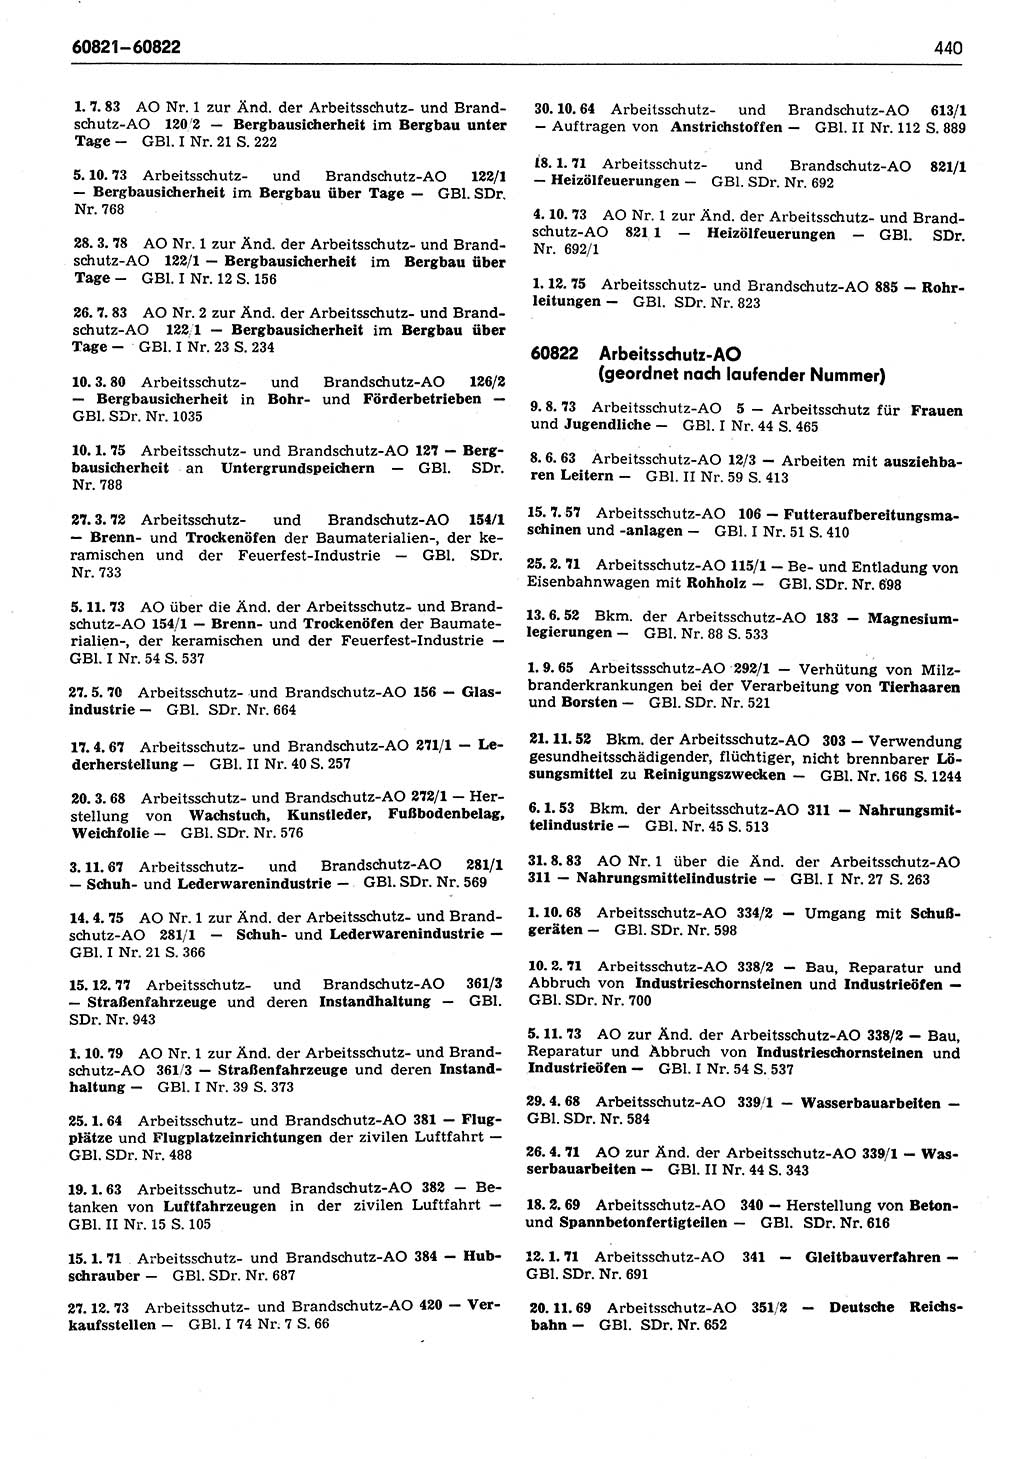 Das geltende Recht der Deutschen Demokratischen Republik (DDR) 1949-1988, Seite 440 (Gelt. R. DDR 1949-1988, S. 440)